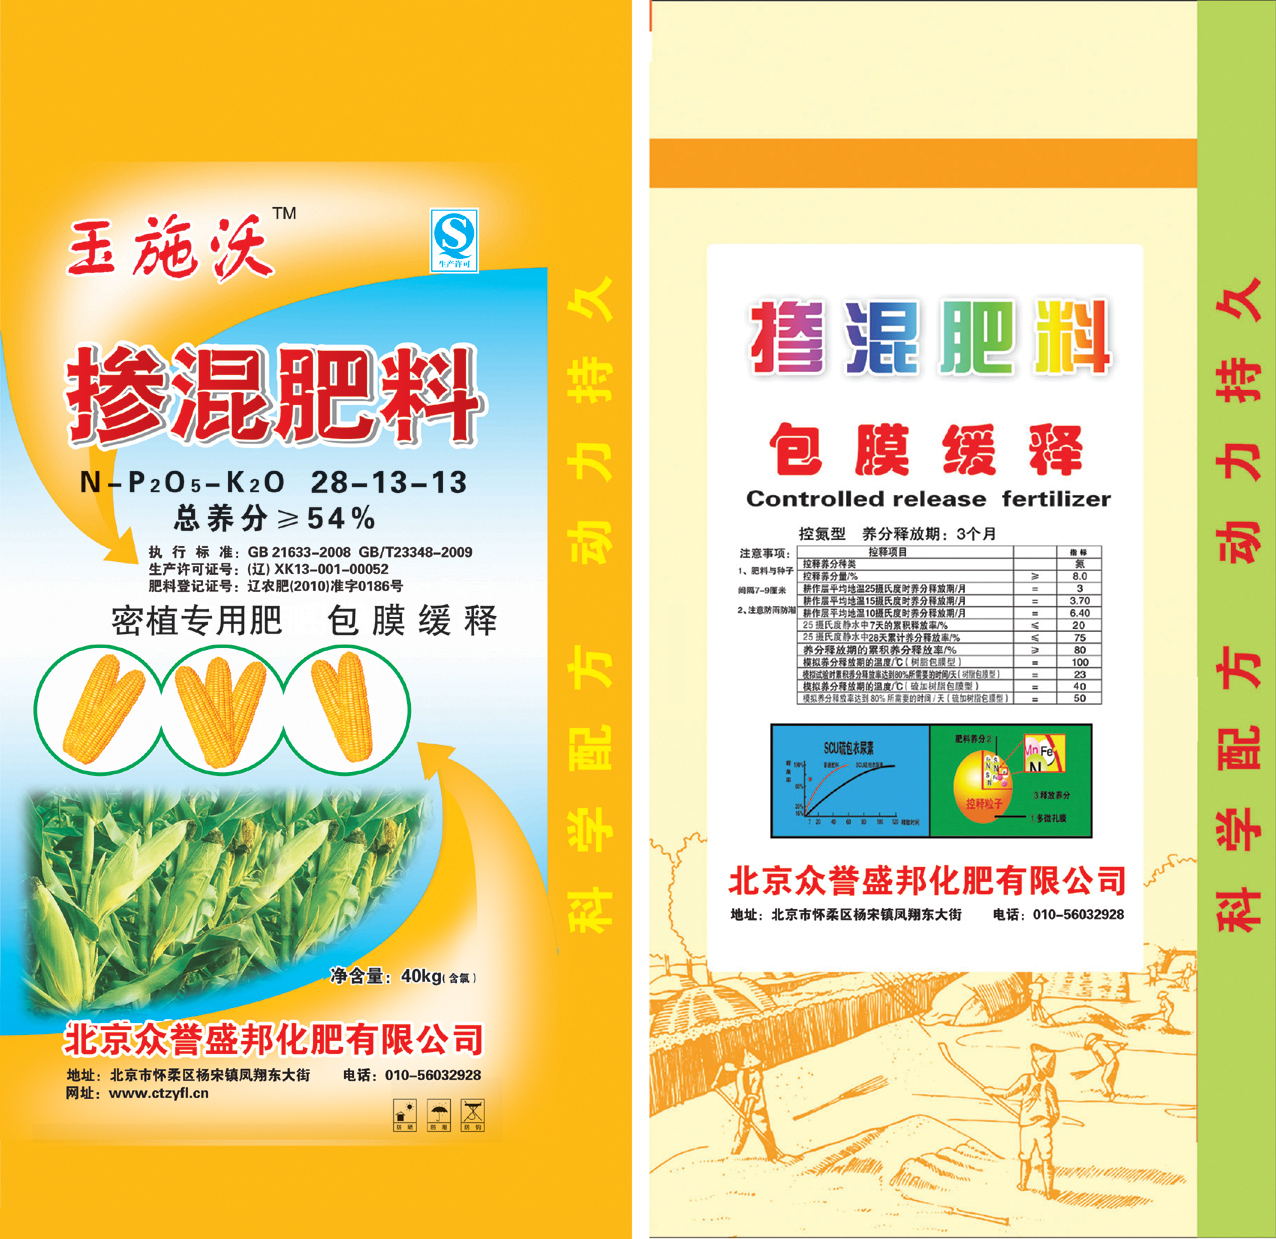 玉施沃掺混肥料 密植专用肥 薄膜缓释总养分大于或等于百分之54北京众誉盛邦化肥有限公司